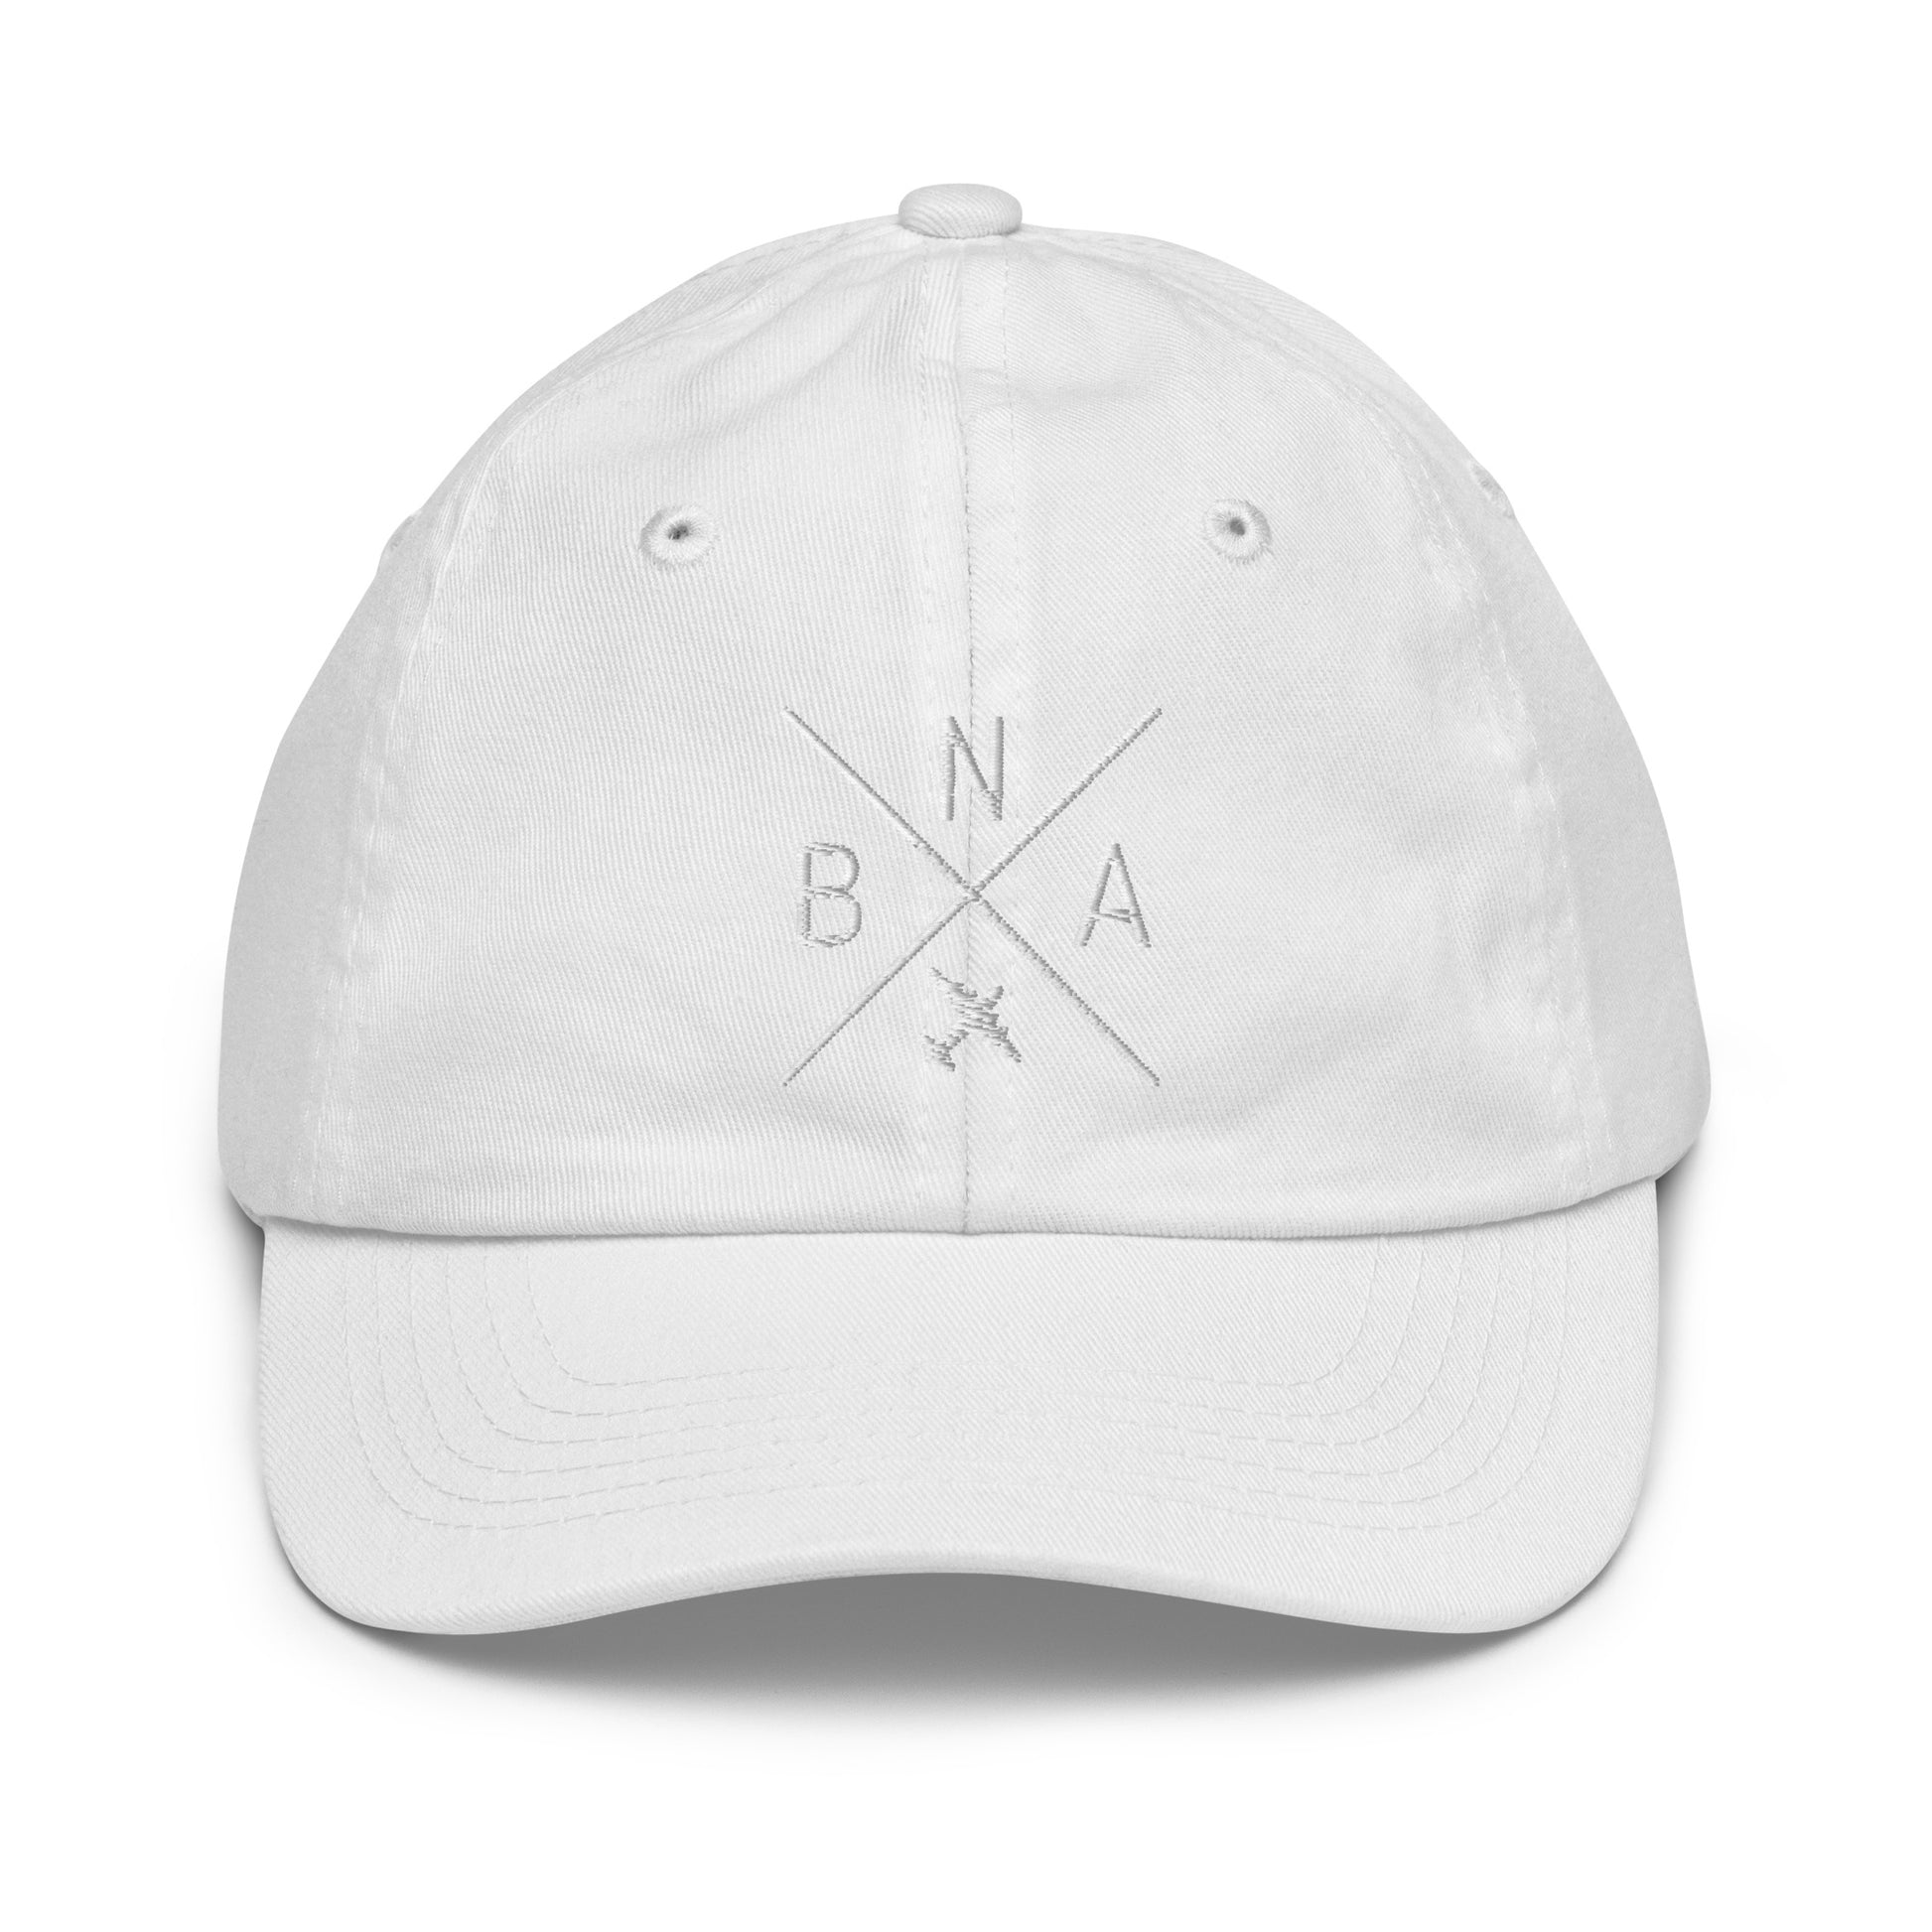 Crossed-X Kid's Baseball Cap - White • BNA Nashville • YHM Designs - Image 34